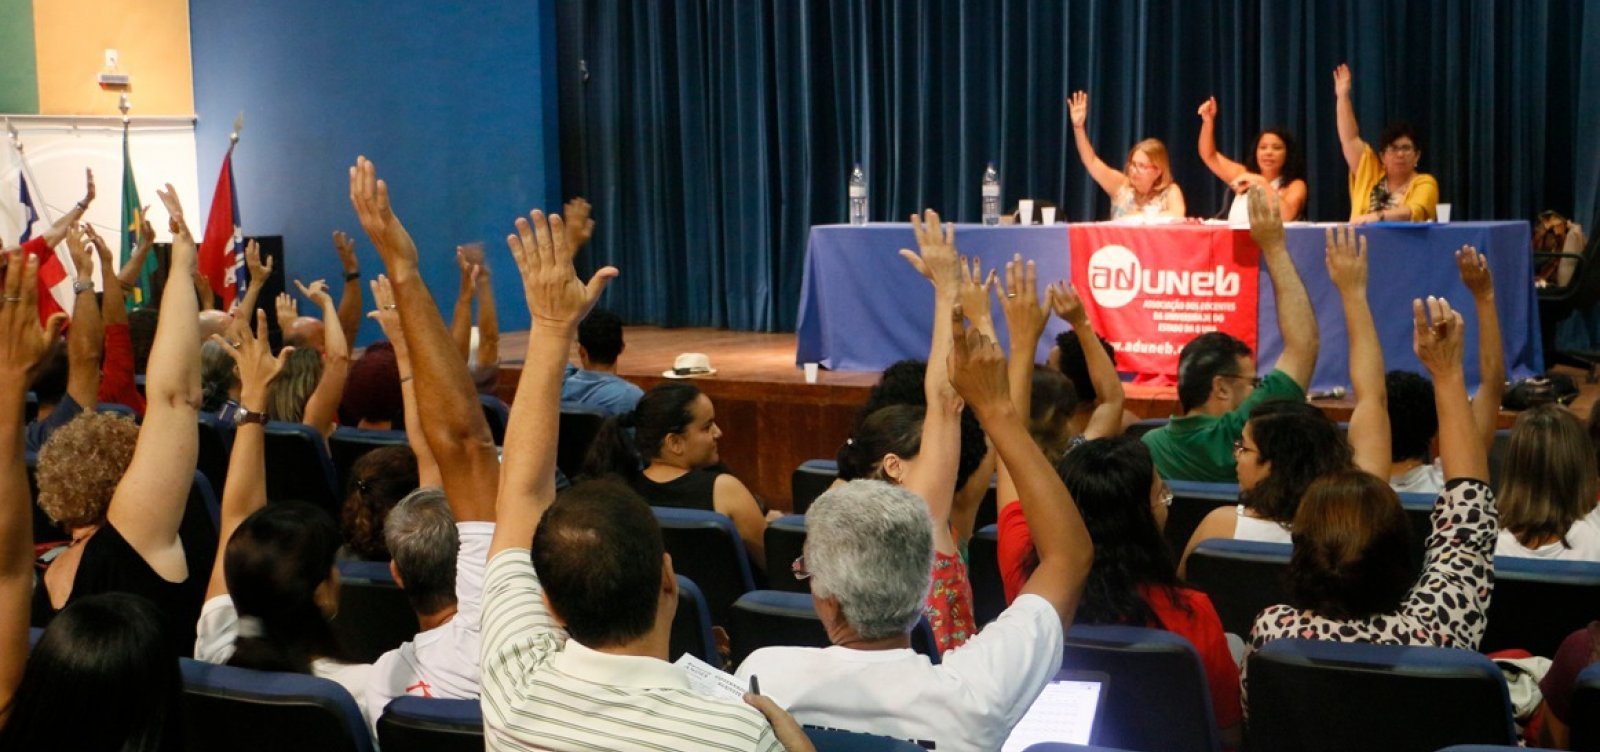 Uneb: professores decidem por continuidade da greve